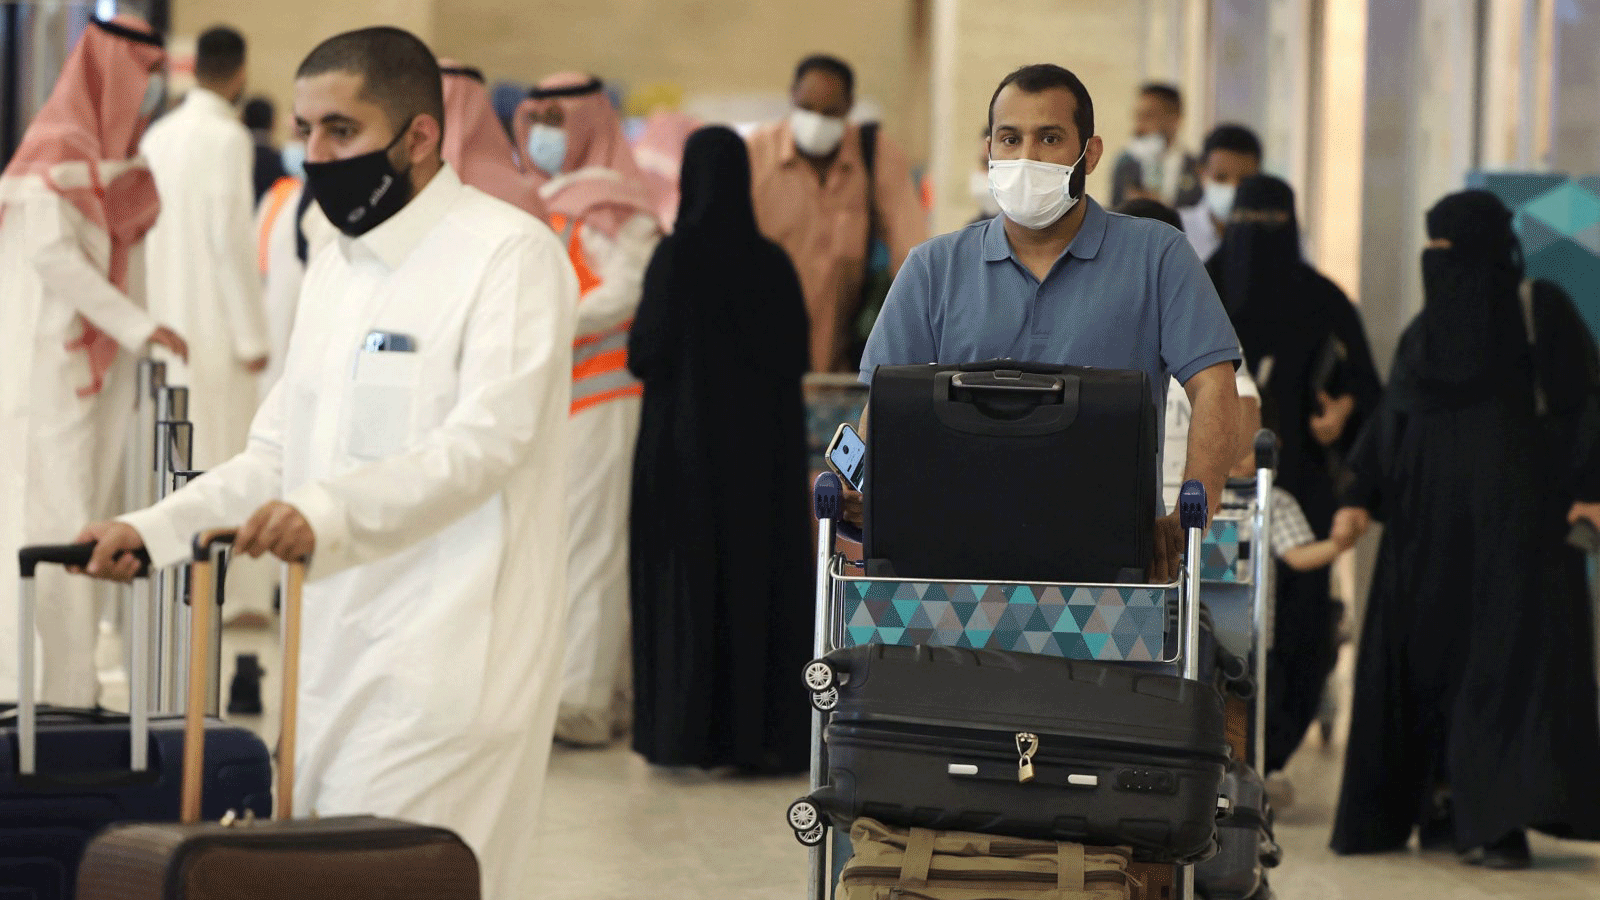 مسافرون سعوديون يصلون إلى مطار الملك خالد الدولي في العاصمة الرياض حيث رفعت السلطات السعودية قيود السفر للمواطنين المحصنين ضد كوفيد -19 ، الرياض، المملكة العربية السعودية، 17 أيار/مايو 2021